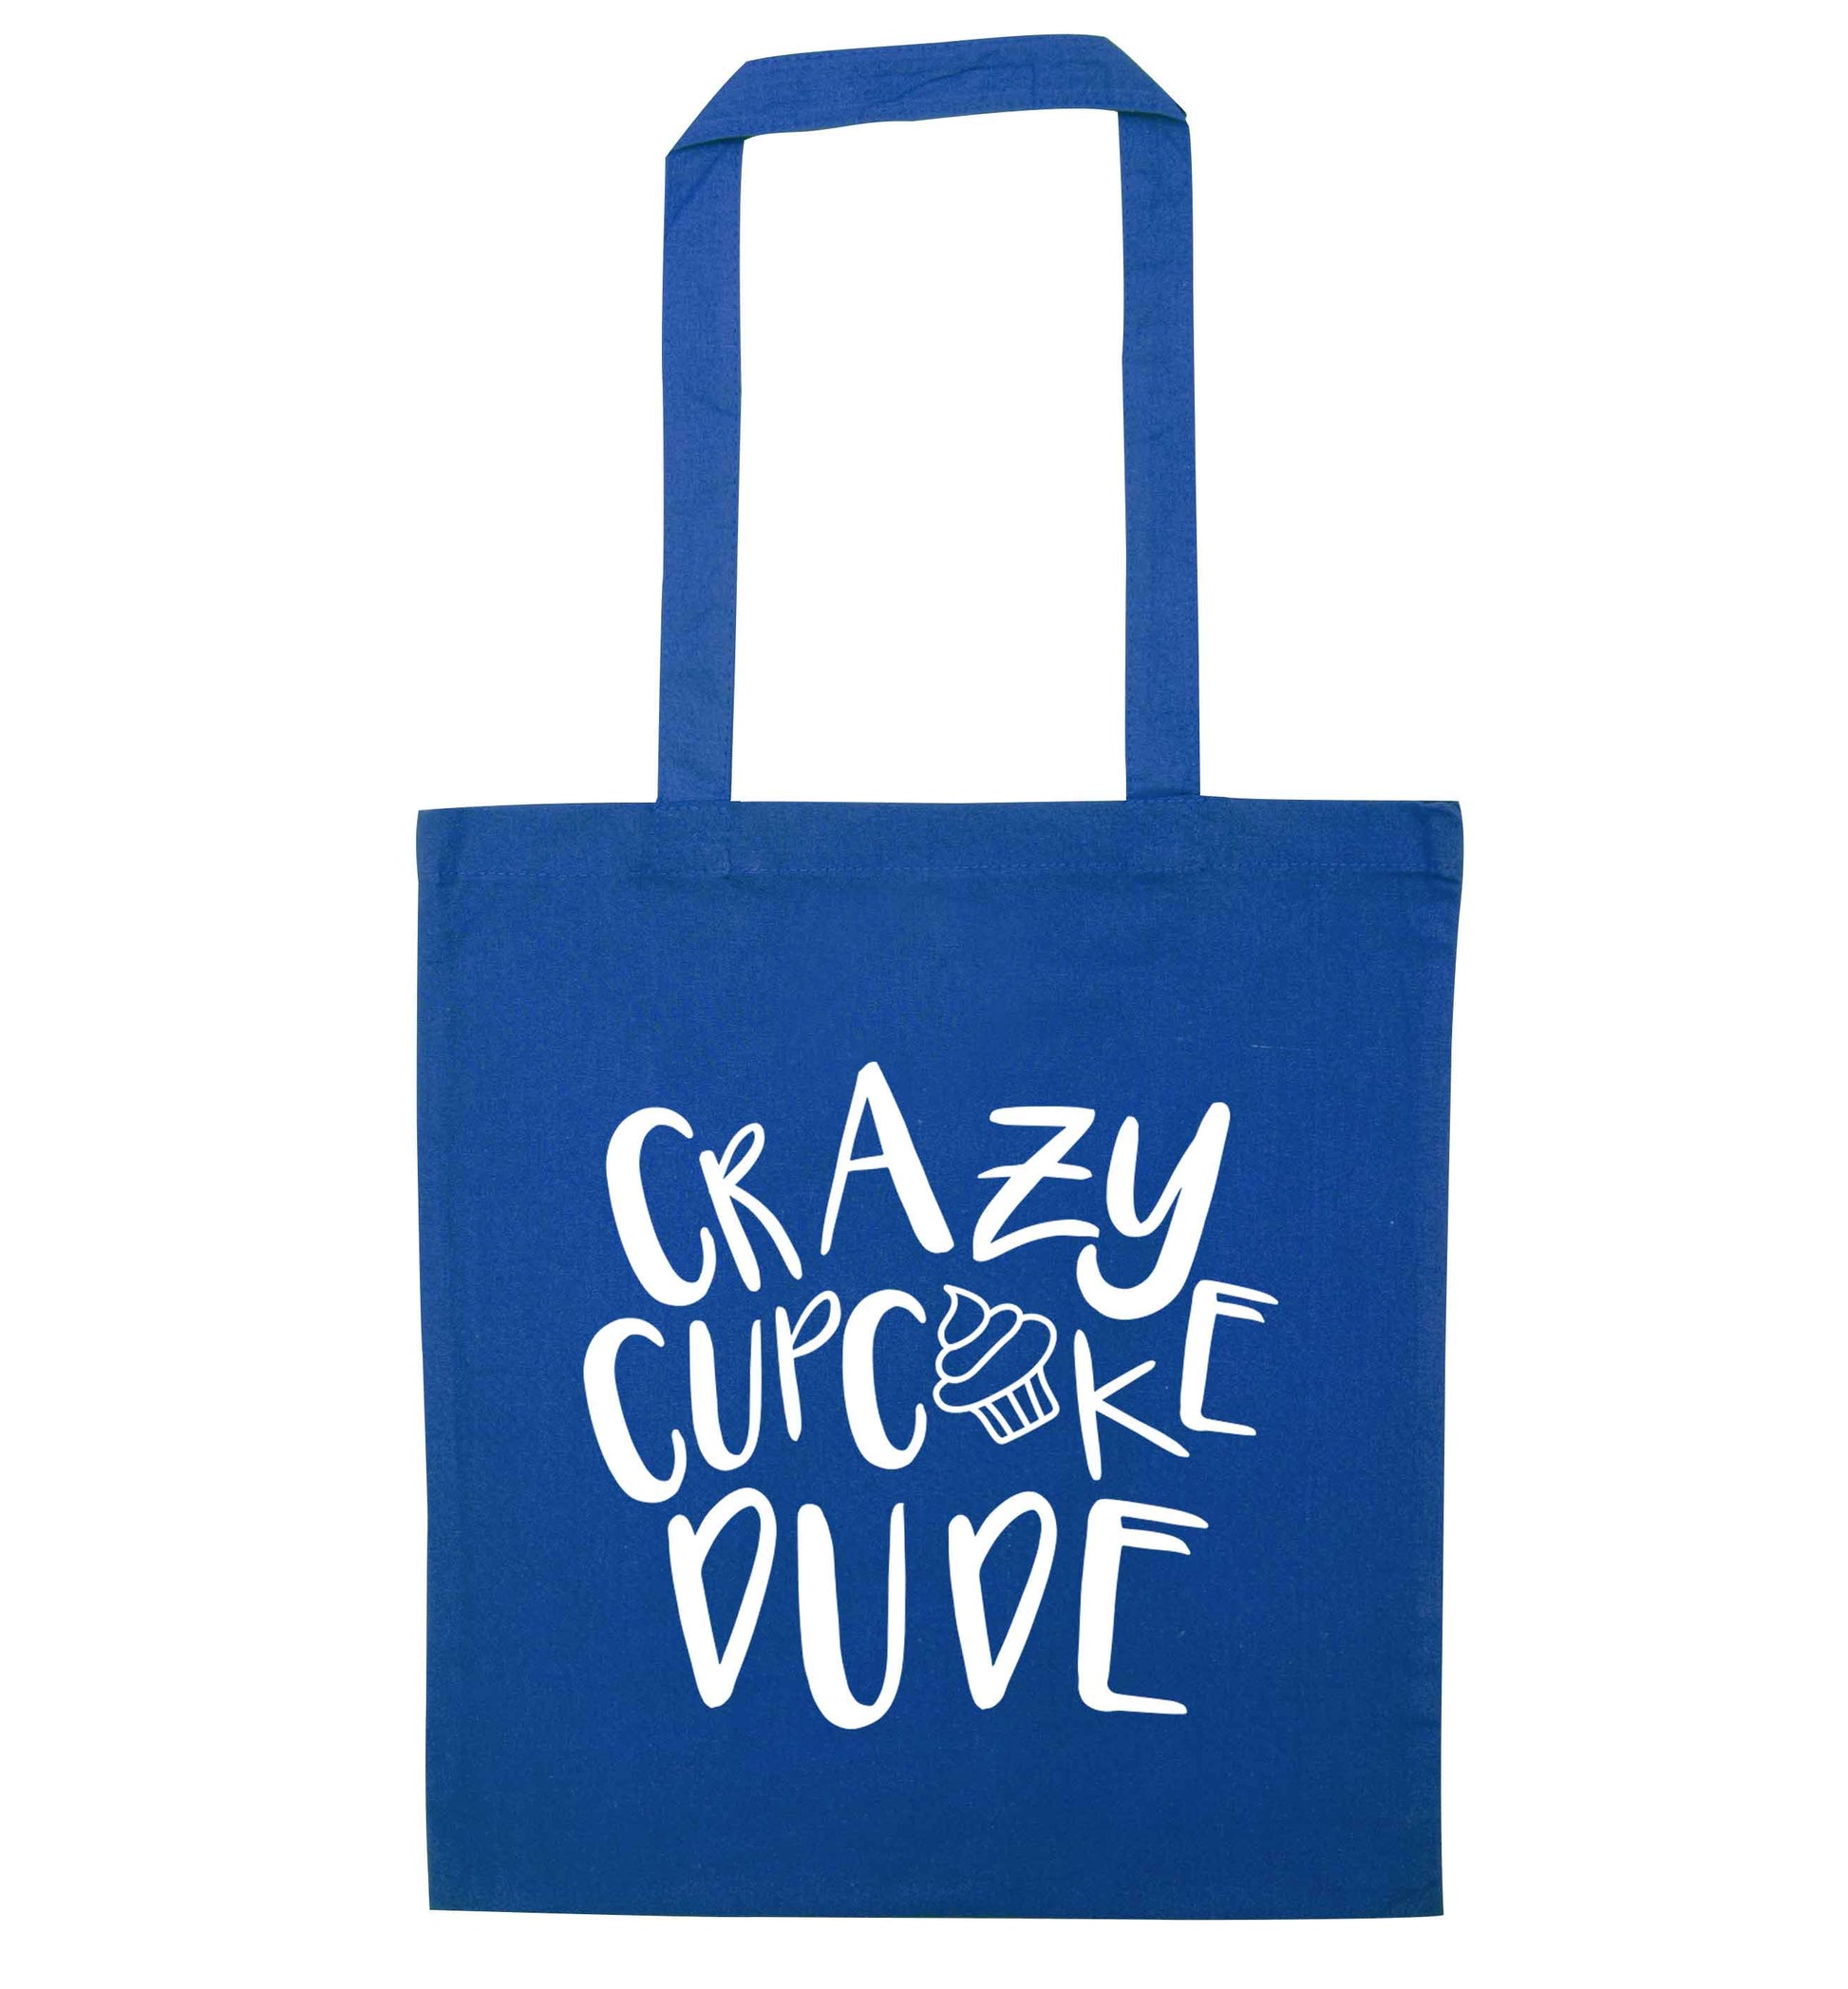 Crazy cupcake dude blue tote bag